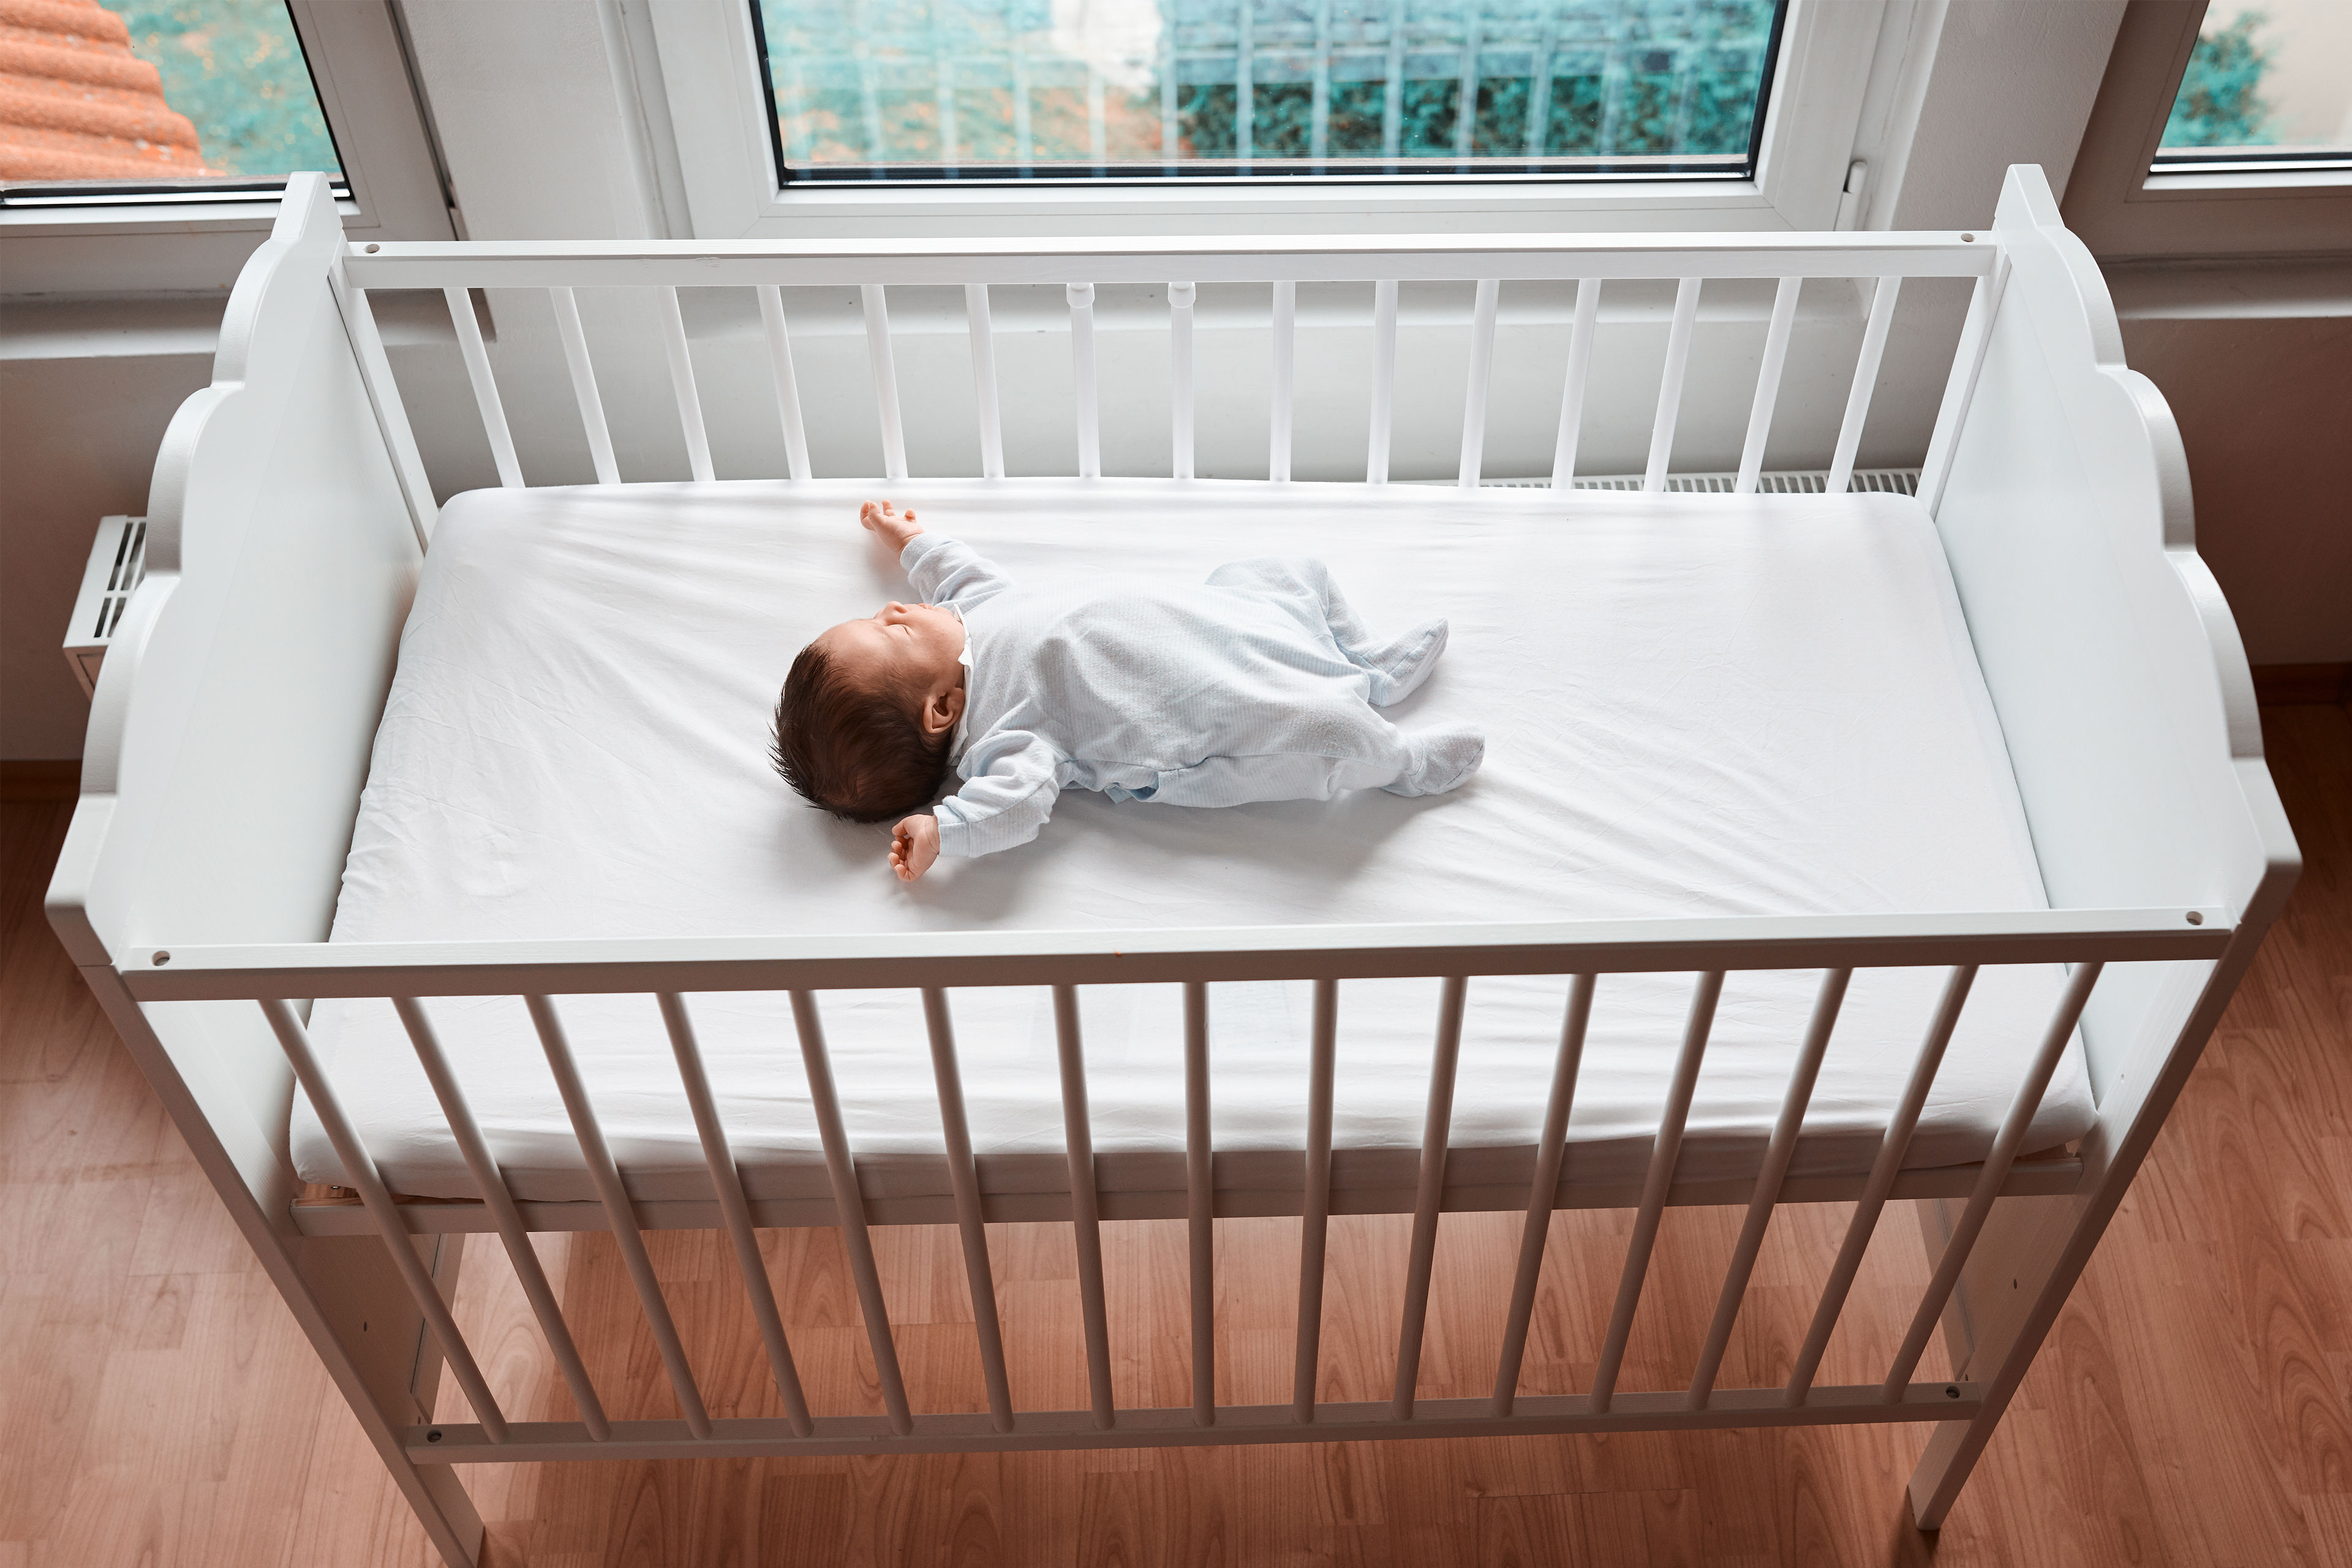 Cuándo pueden dormir los bebés con peluches?